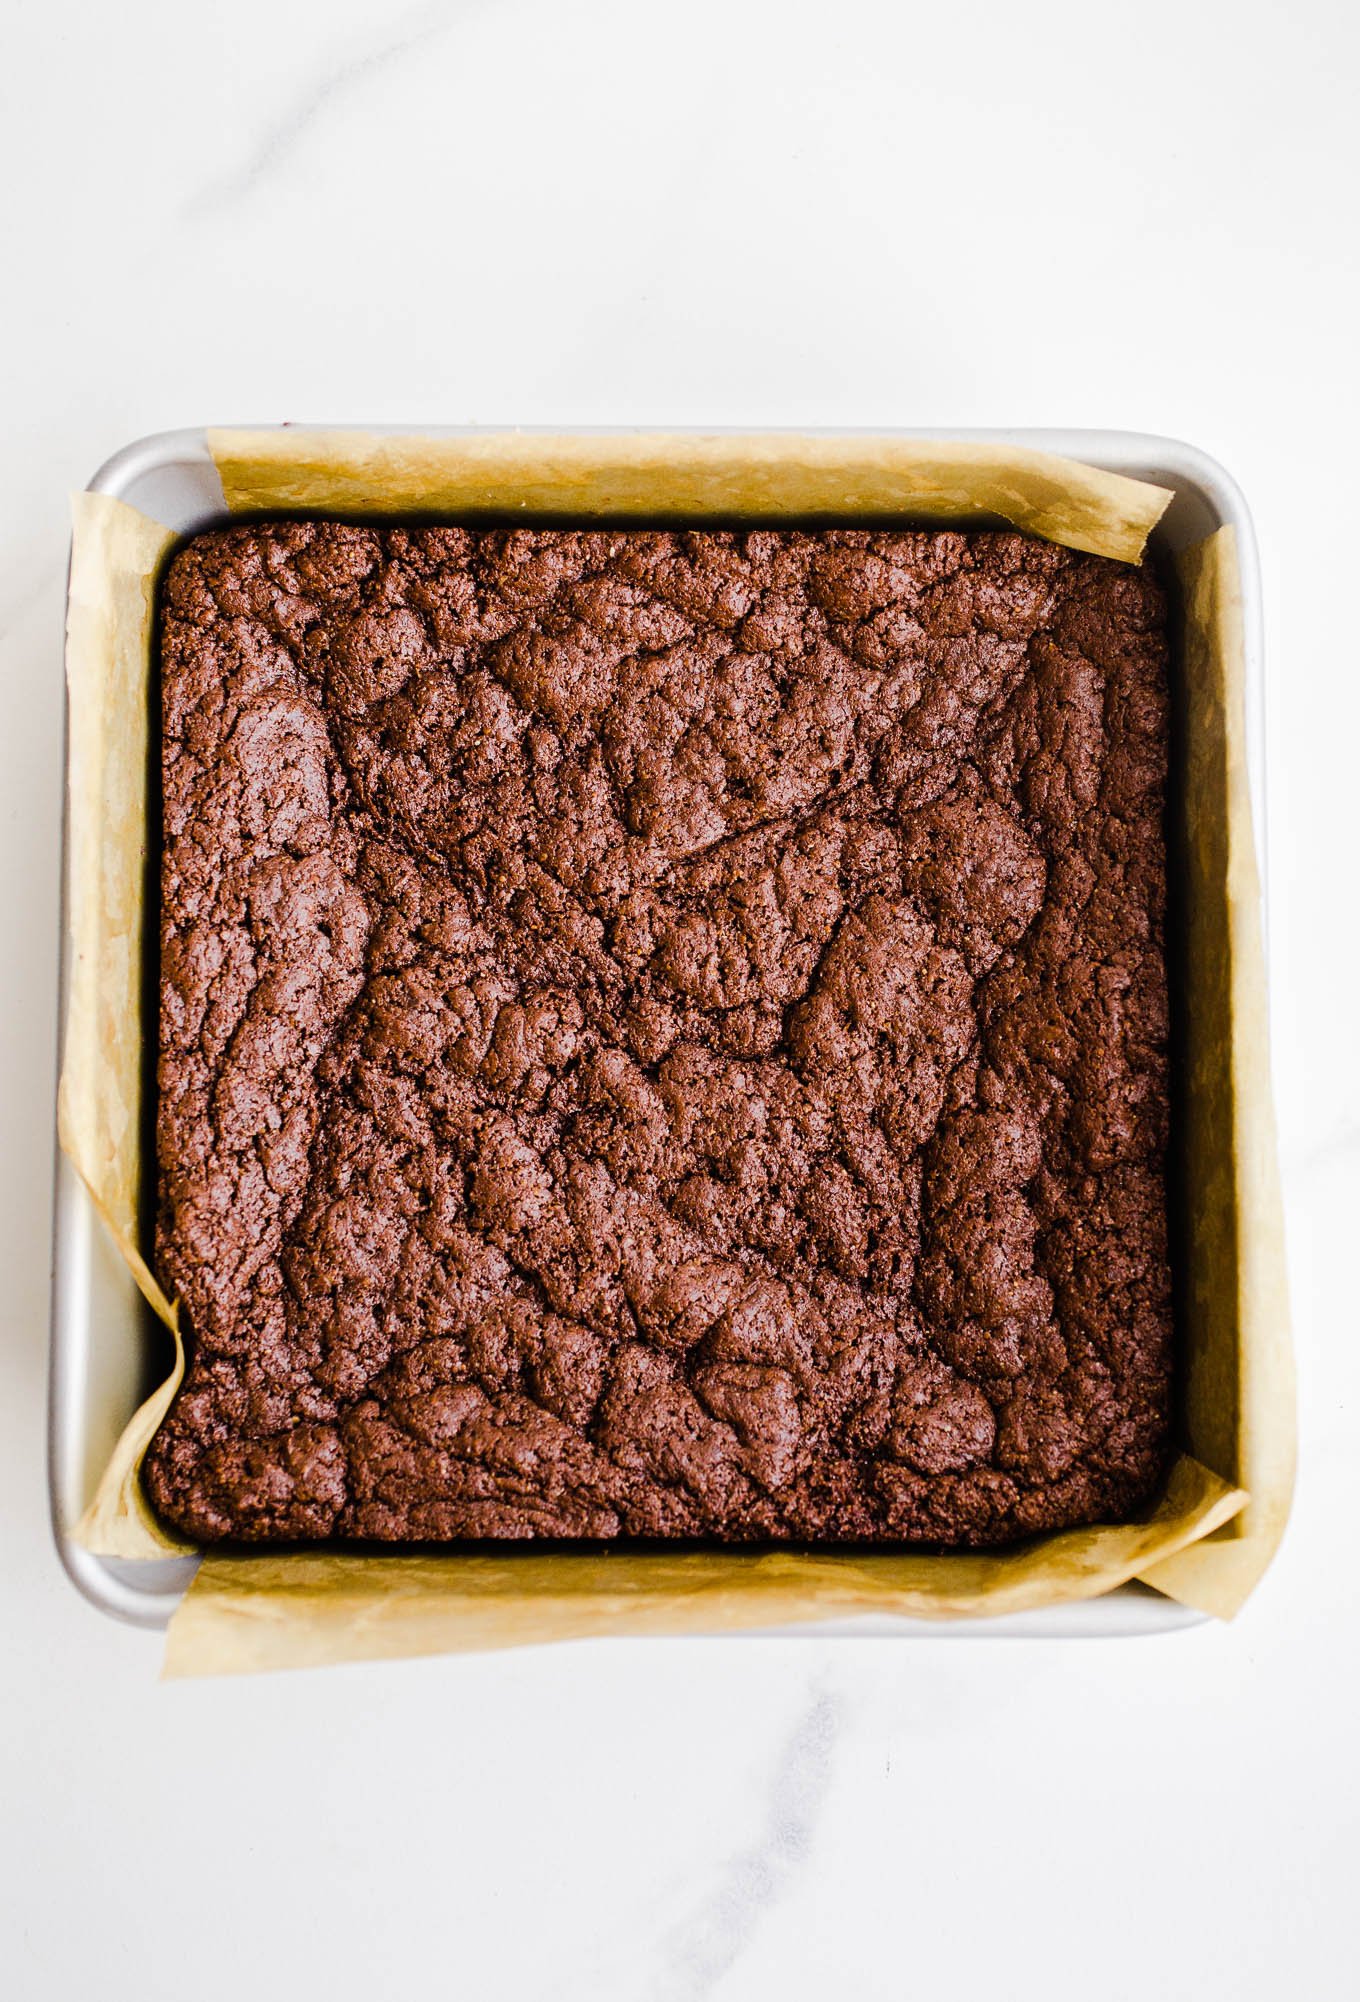 brownies in a metal pan.